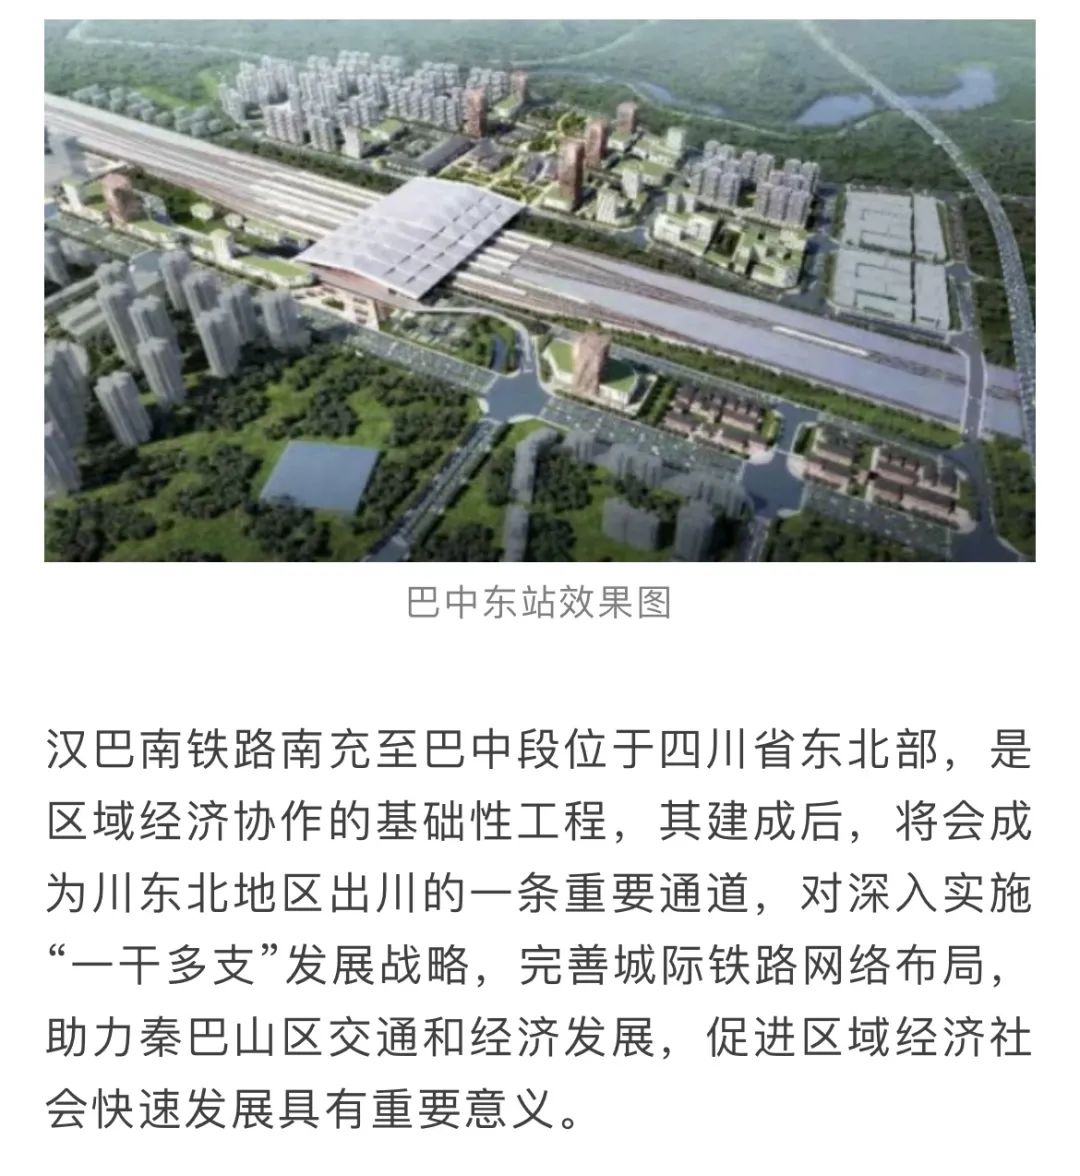 聚焦重大项目汉巴南铁路巴中东站5月底将建成铺轨基地